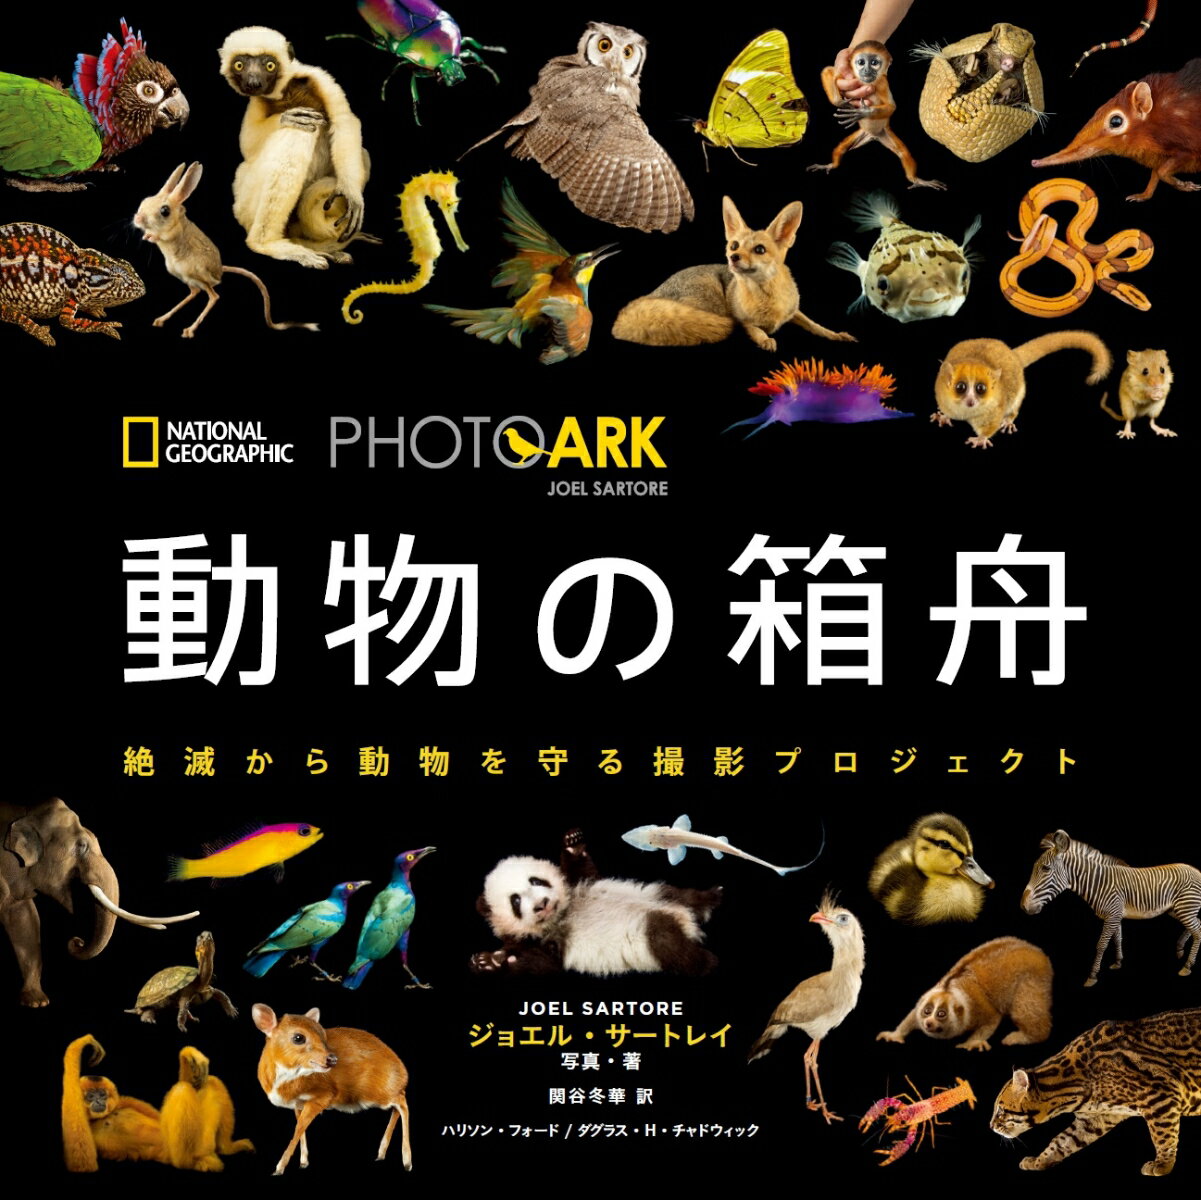 動物の箱舟 PHOTO ARK 絶滅から動物を守る撮影プロジェ ジョエル サートレイ